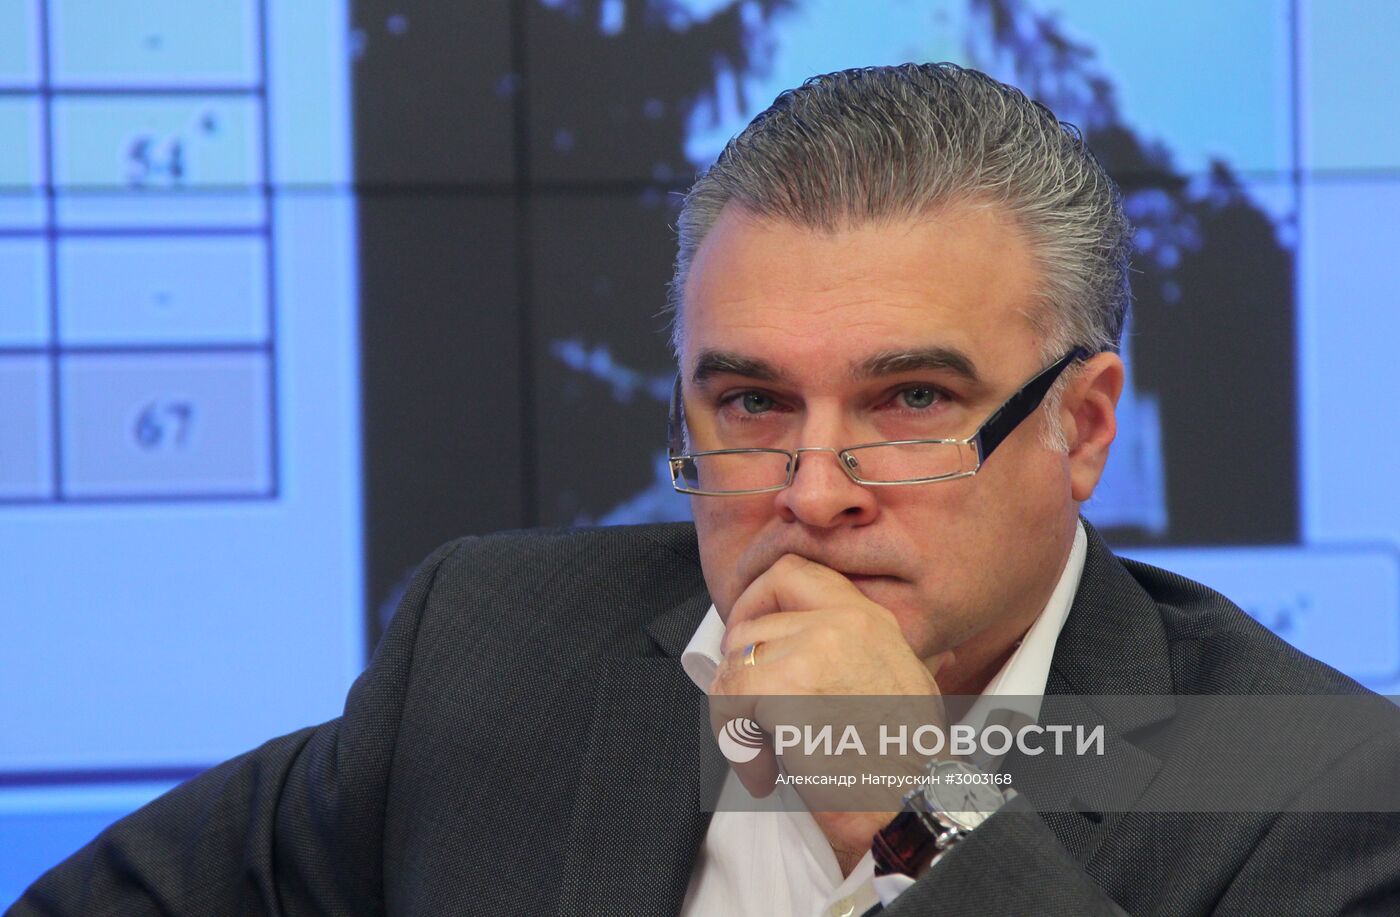 Начальник Управления культуры МО РФ Антон Губанков погиб при крушении самолёта Ту-154 в Сочи